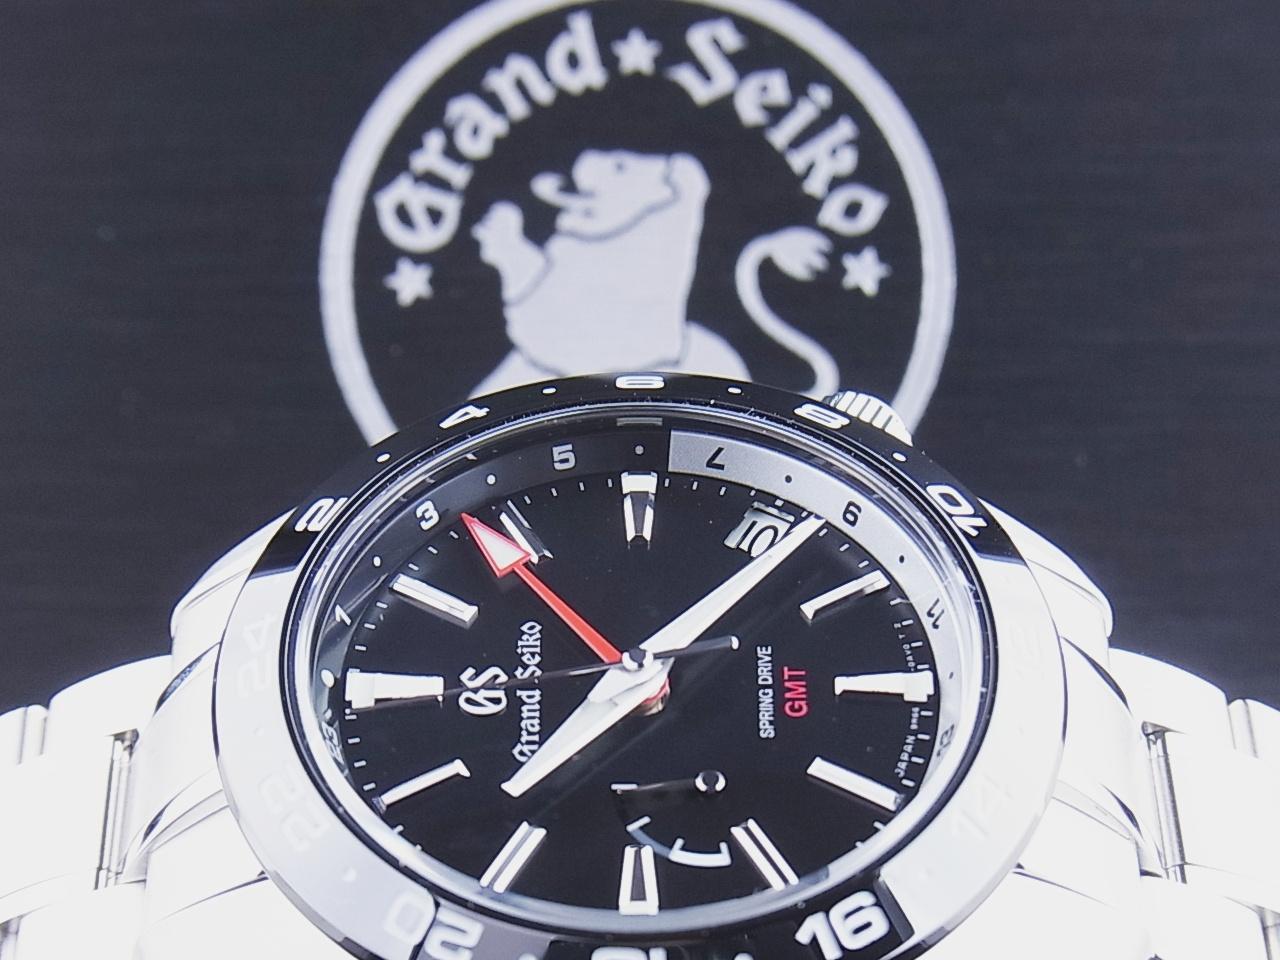 グランド セイコー GRAND SEIKO 腕時計 メンズ SBGE253 スポーツコレクション スプリングドライブ GMT セラミックベゼル Sport Collection Active スプリングドライブ（9R66/手巻き付） ブラックxシルバー アナログ表示